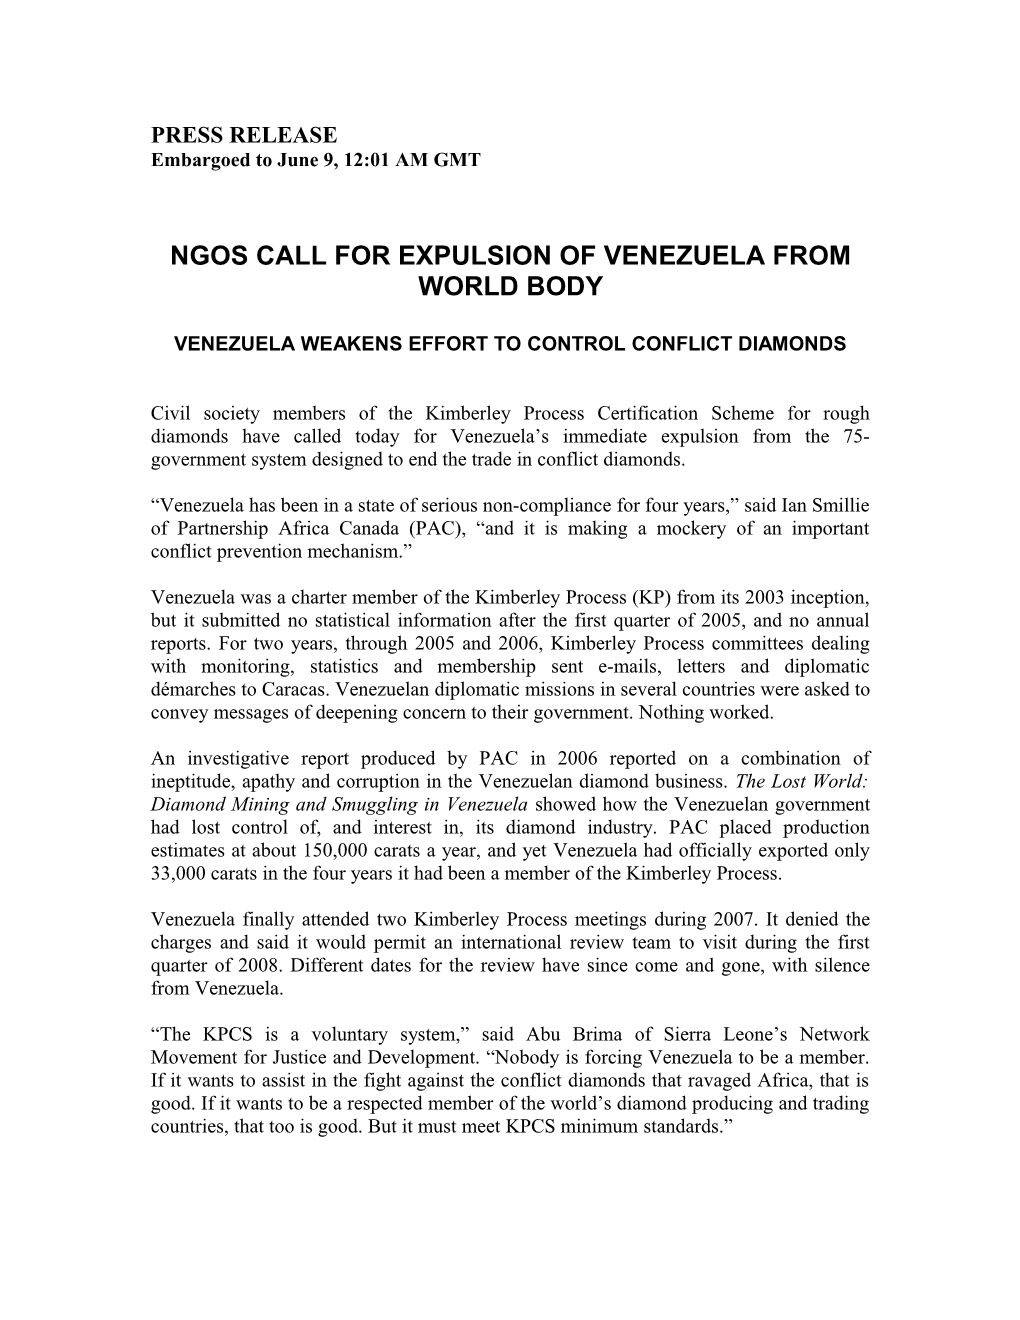 Ngos Call for Expulsion of Venezuela from World Body